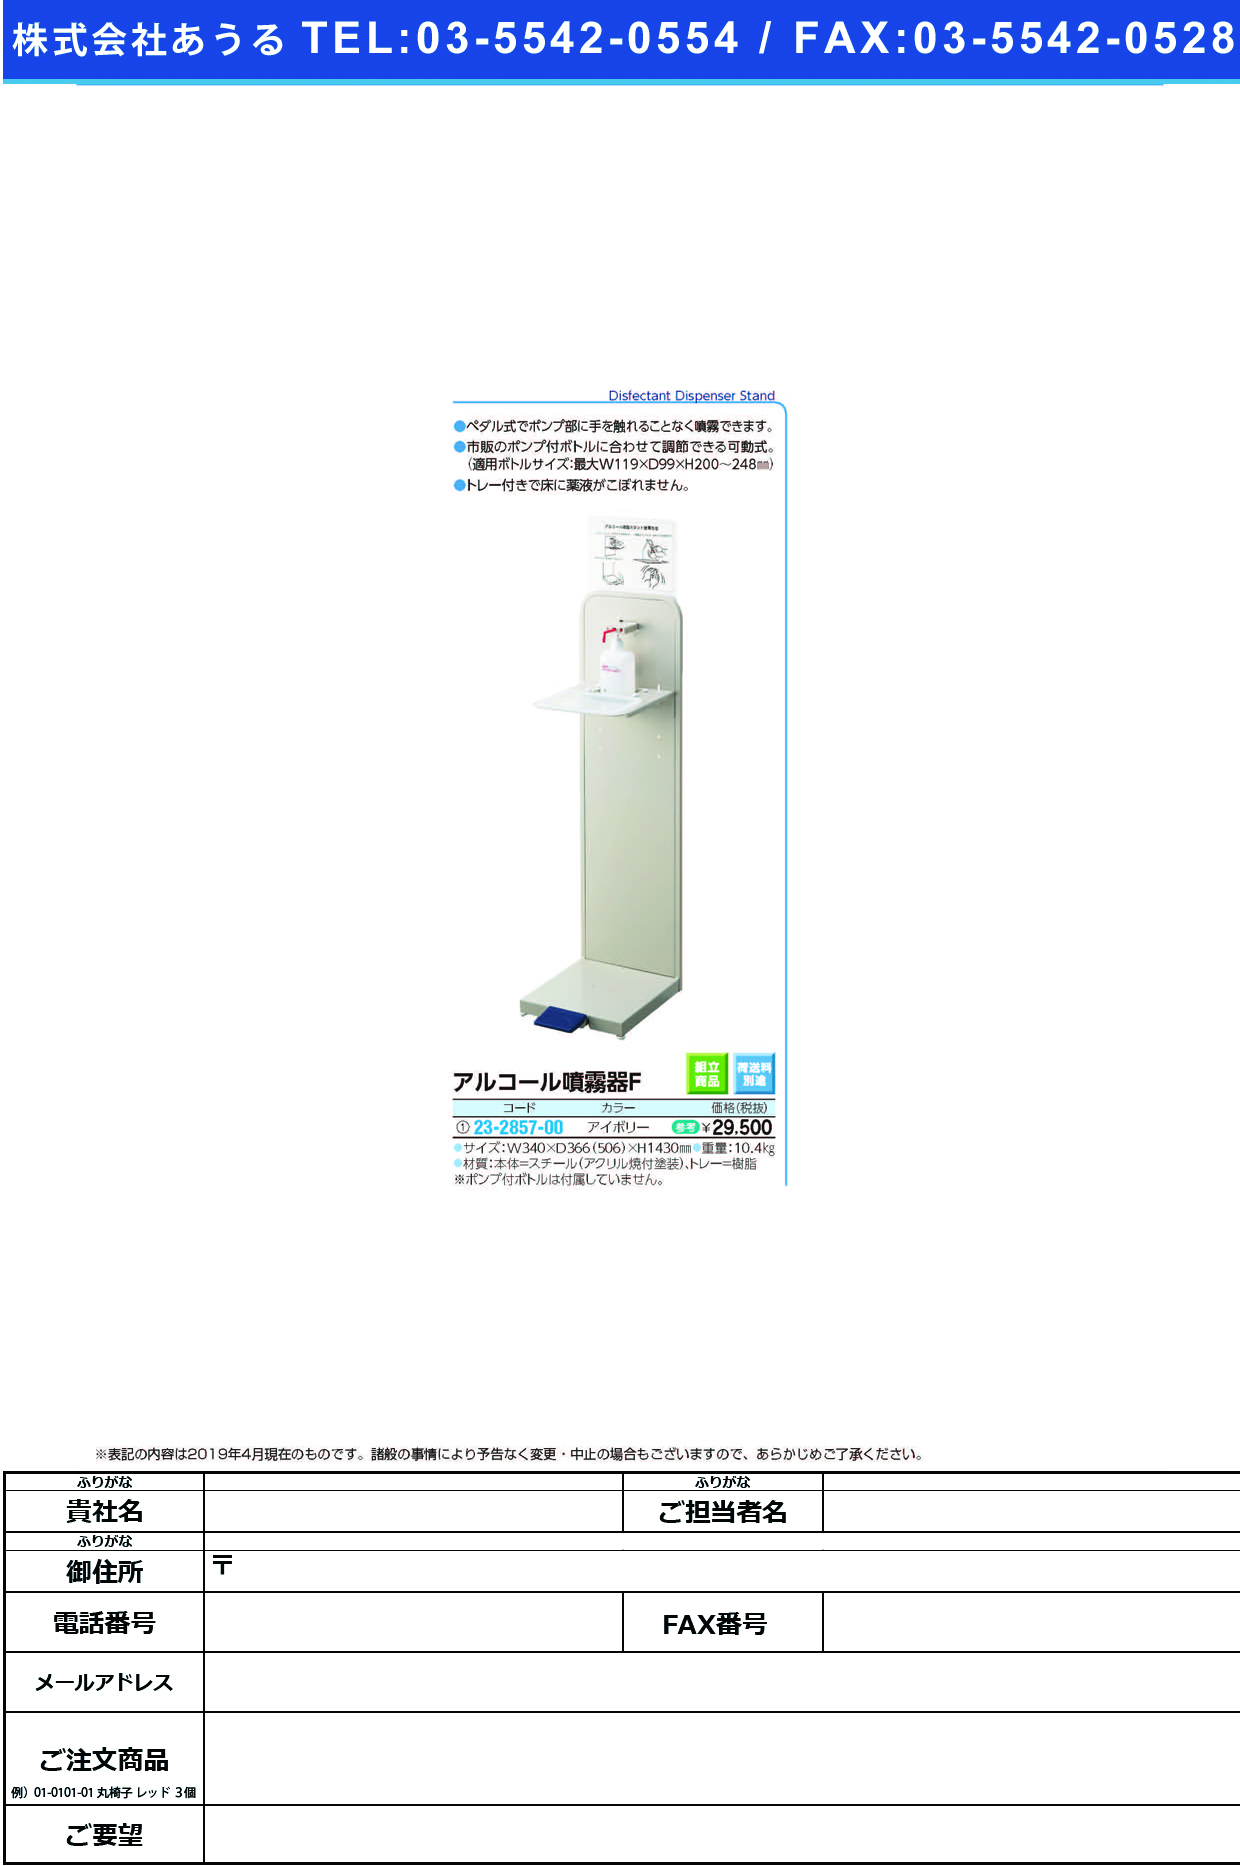 (23-2857-00)アルコール噴霧器Ｆ YE-08-ID ｱﾙｺｰﾙﾌﾝﾑｷF(山崎産業)【1台単位】【2019年カタログ商品】